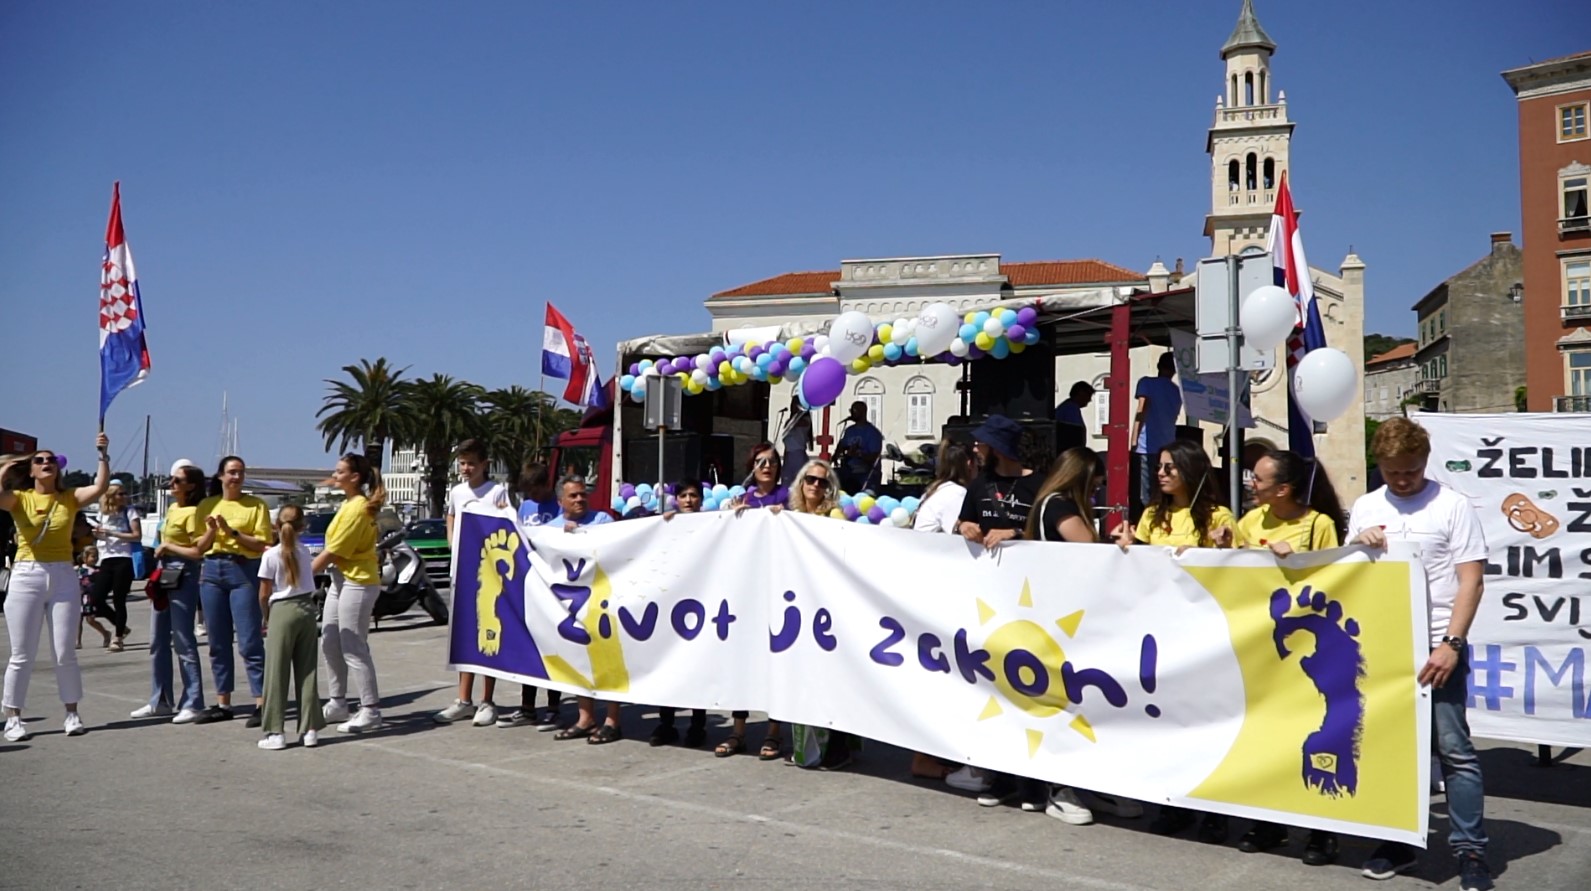 U Splitu i Imotskome hodalo se za život – jer život je zakon!